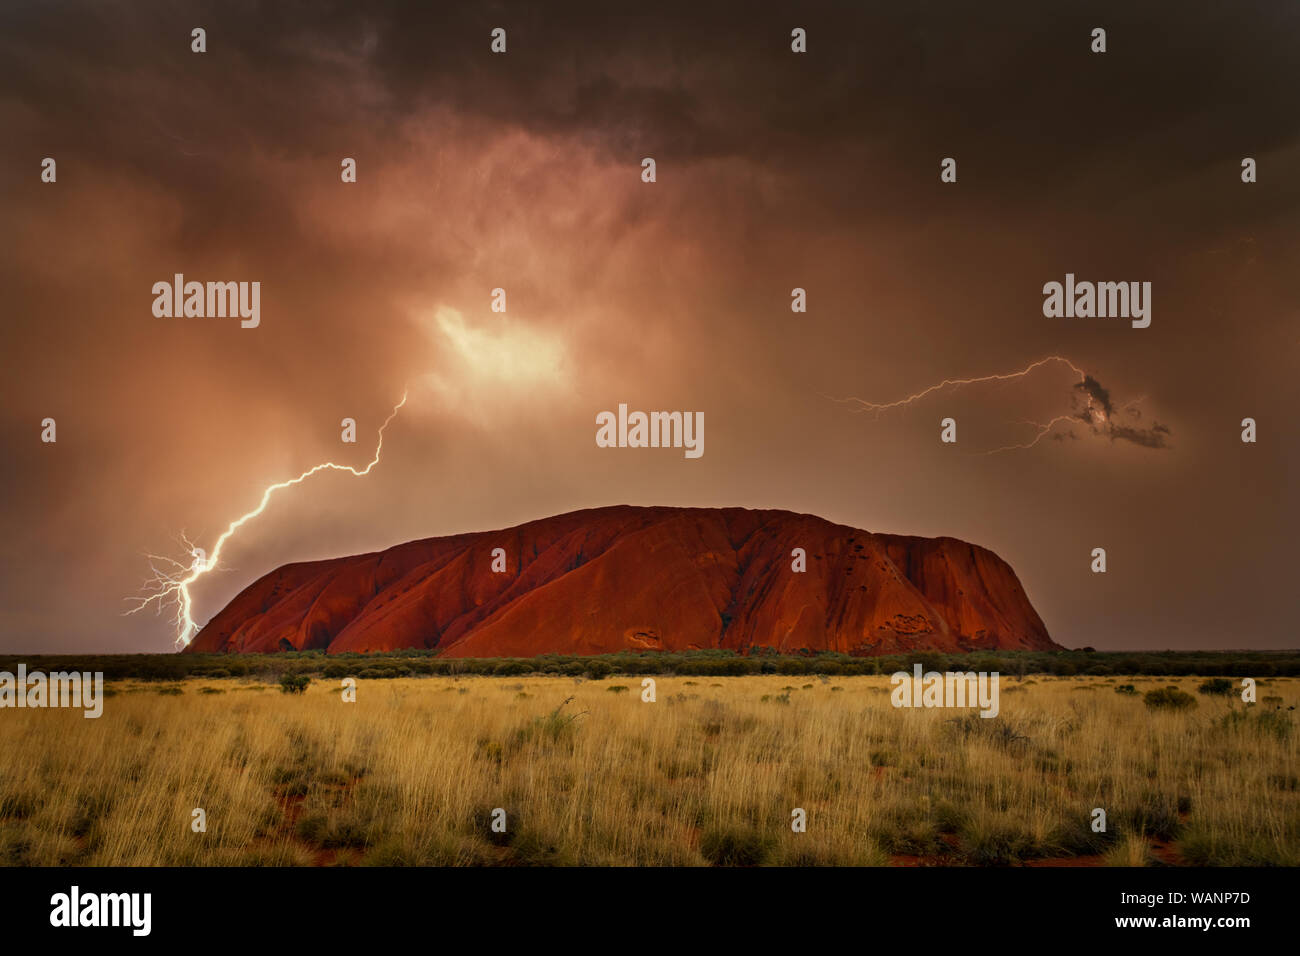 Molto raramente per vedere il famoso Uluru in una tempesta. Foto Stock